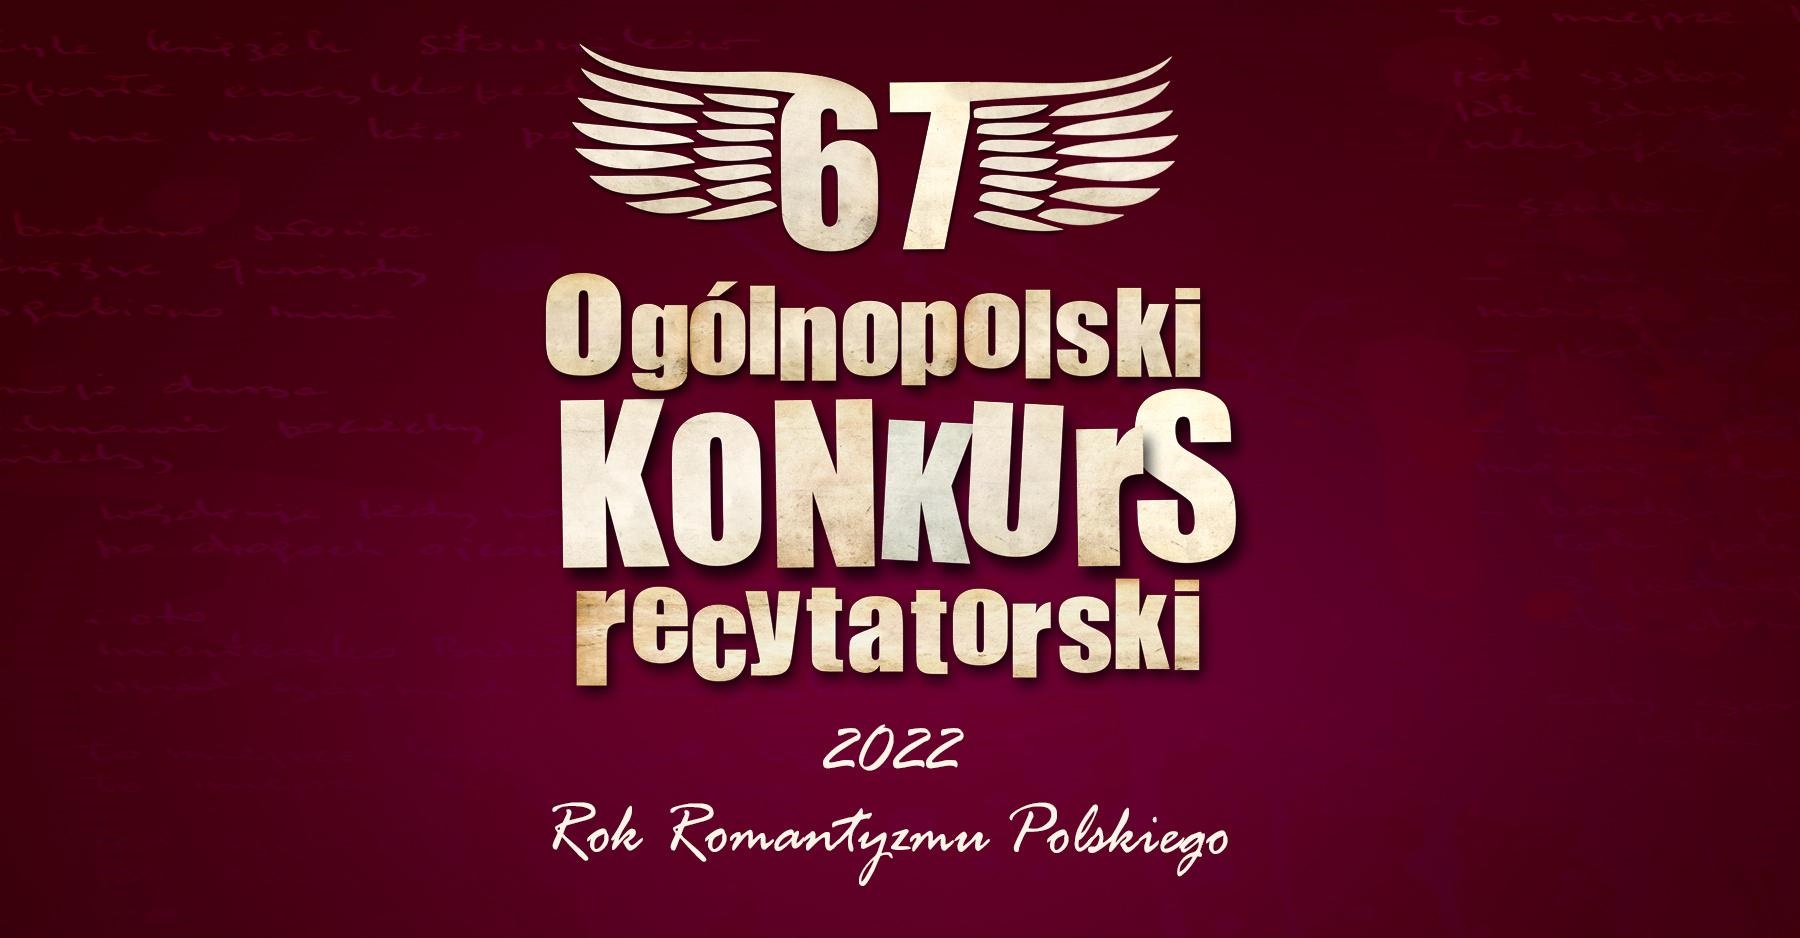 baner promujący 67. Ogólnopolski Konkurs Recytatorski - eliminacje miejskie